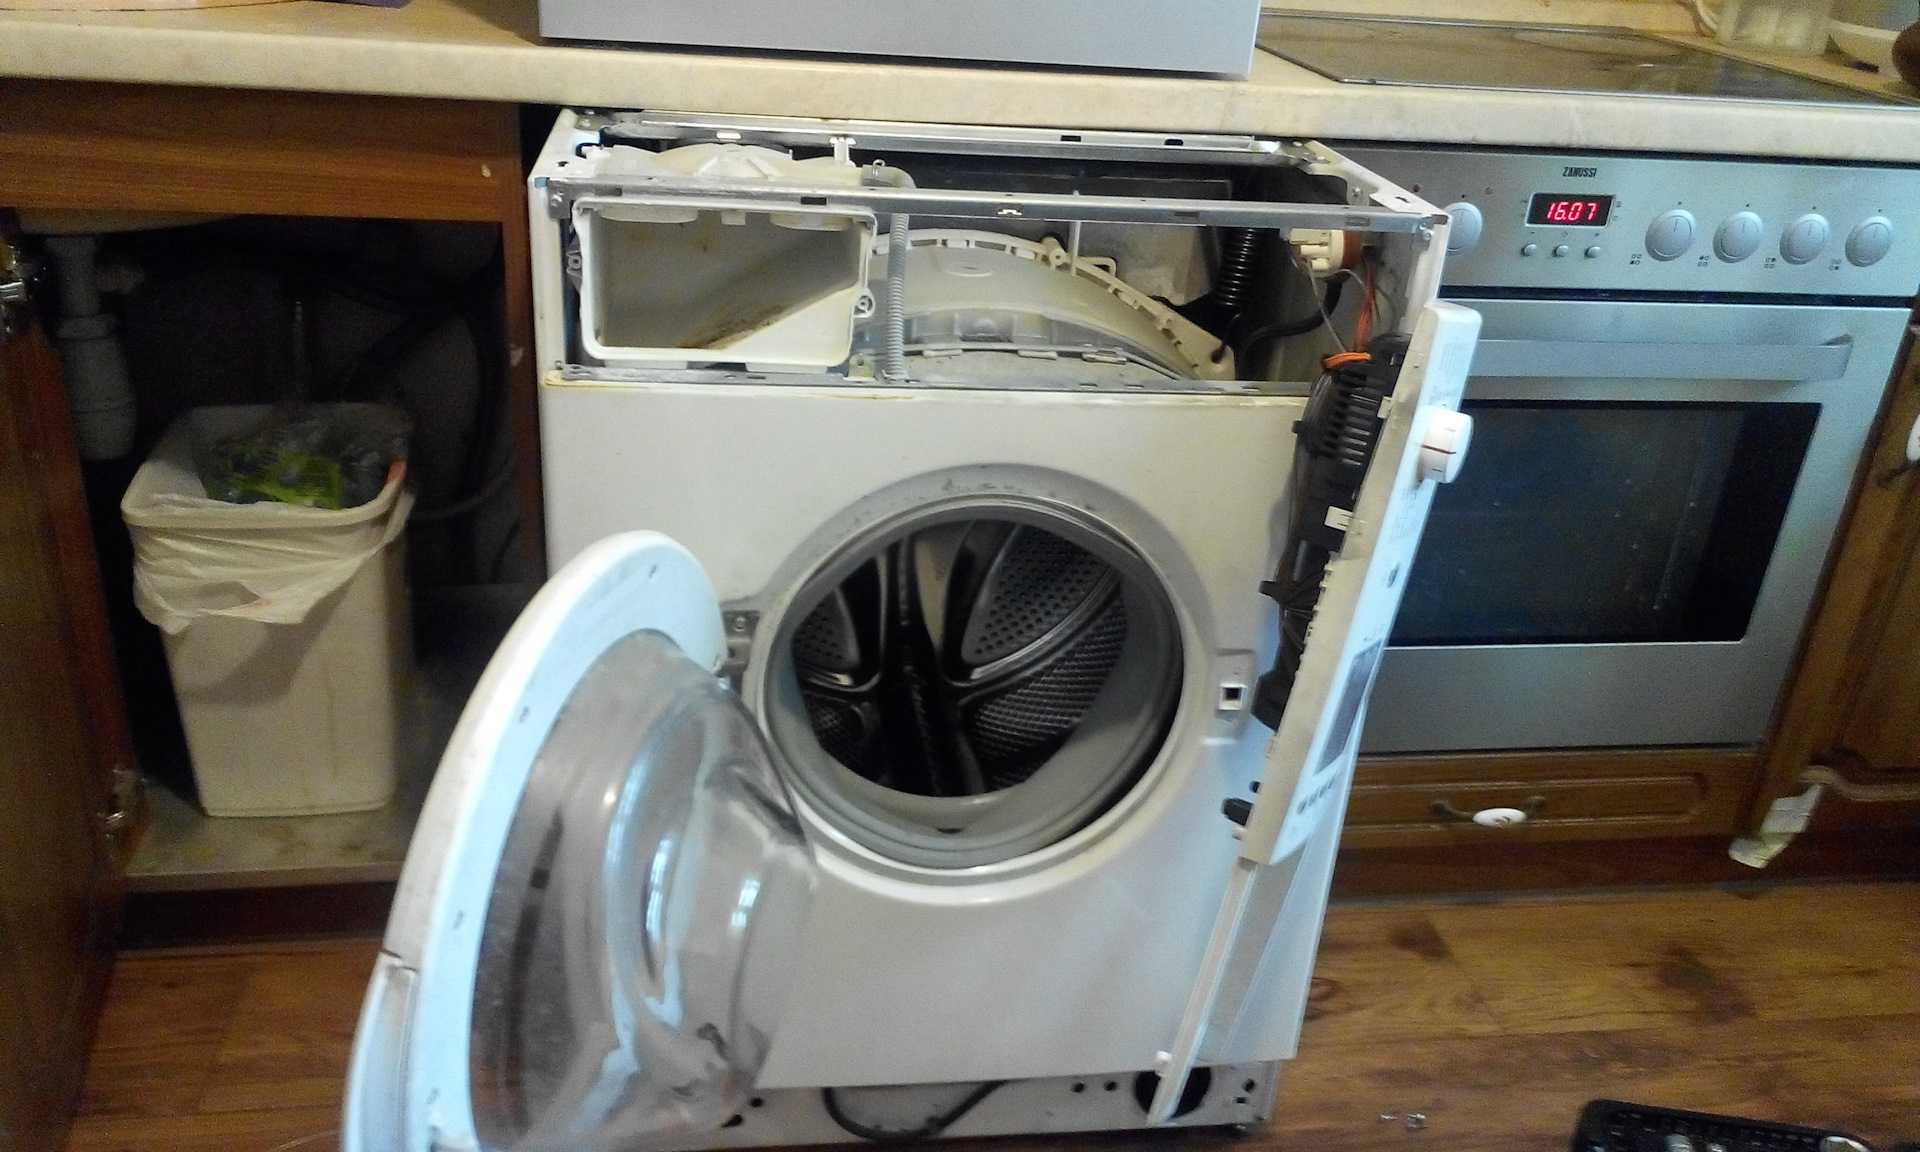 Как разобрать стиральную машину бош своими руками